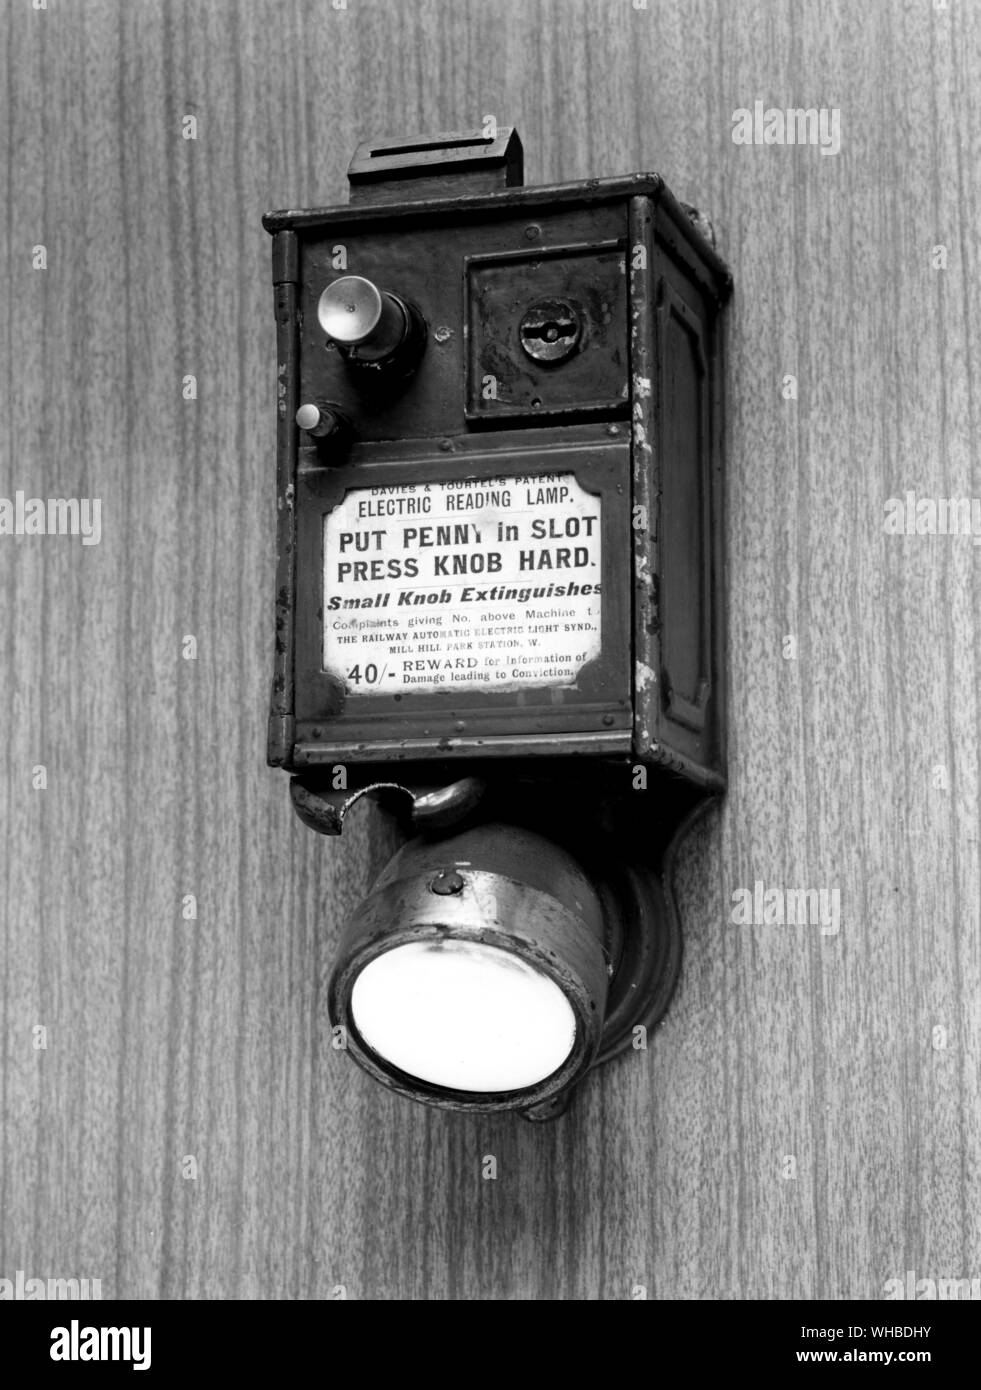 Davies y la Patente Tourtel Electric lámpara de lectura - ponga penny en la ranura - presione la perilla hard - pomo pequeño se apaga - 40/- recompensa por información de los daños que conducen a la condena. Foto de stock